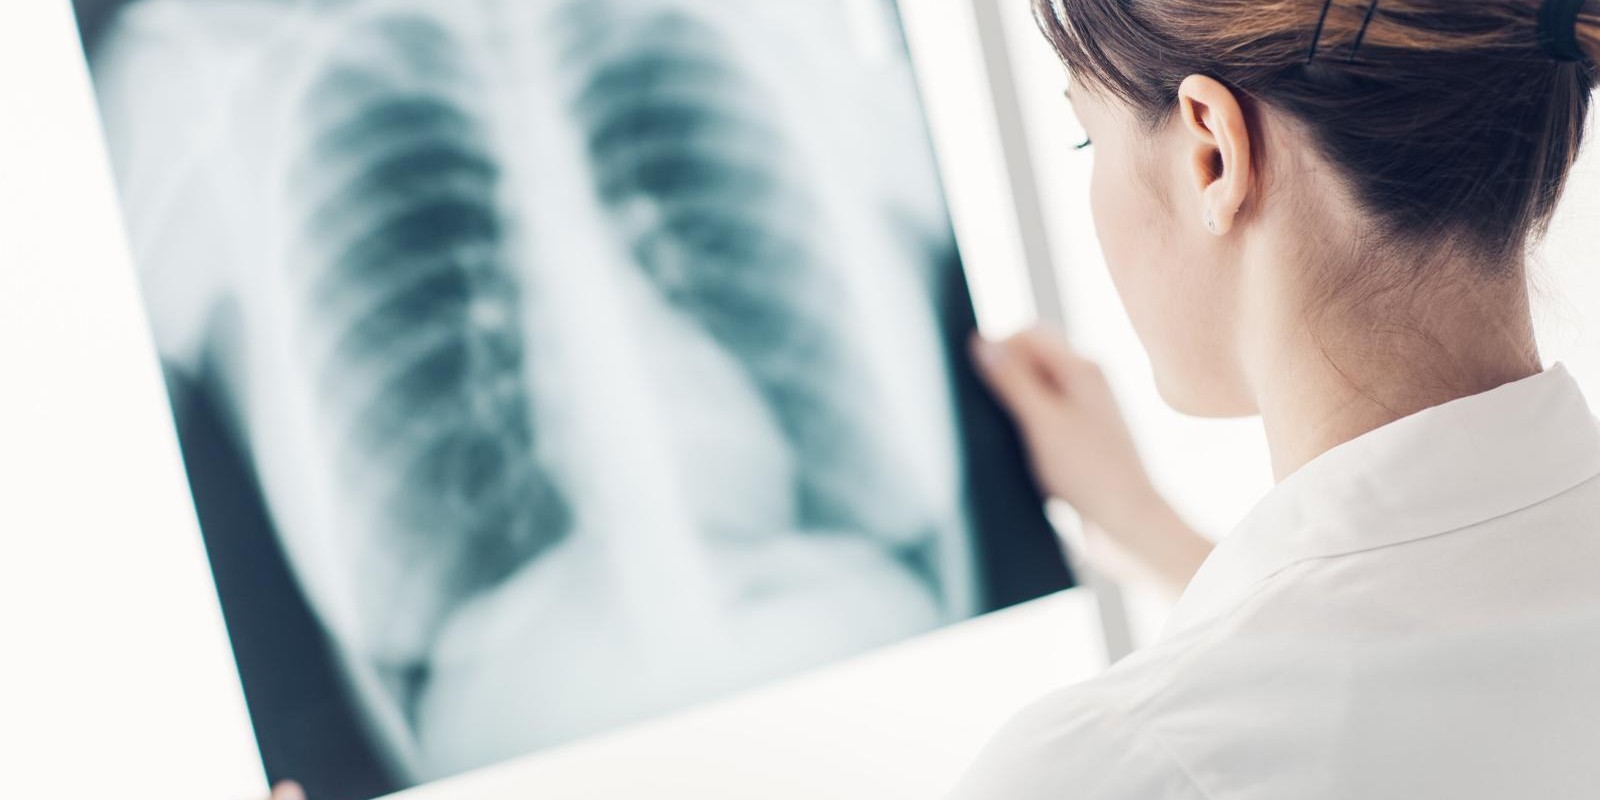 Quais são os exames de imagem que ajudam a diagnosticar doenças pulmonares?